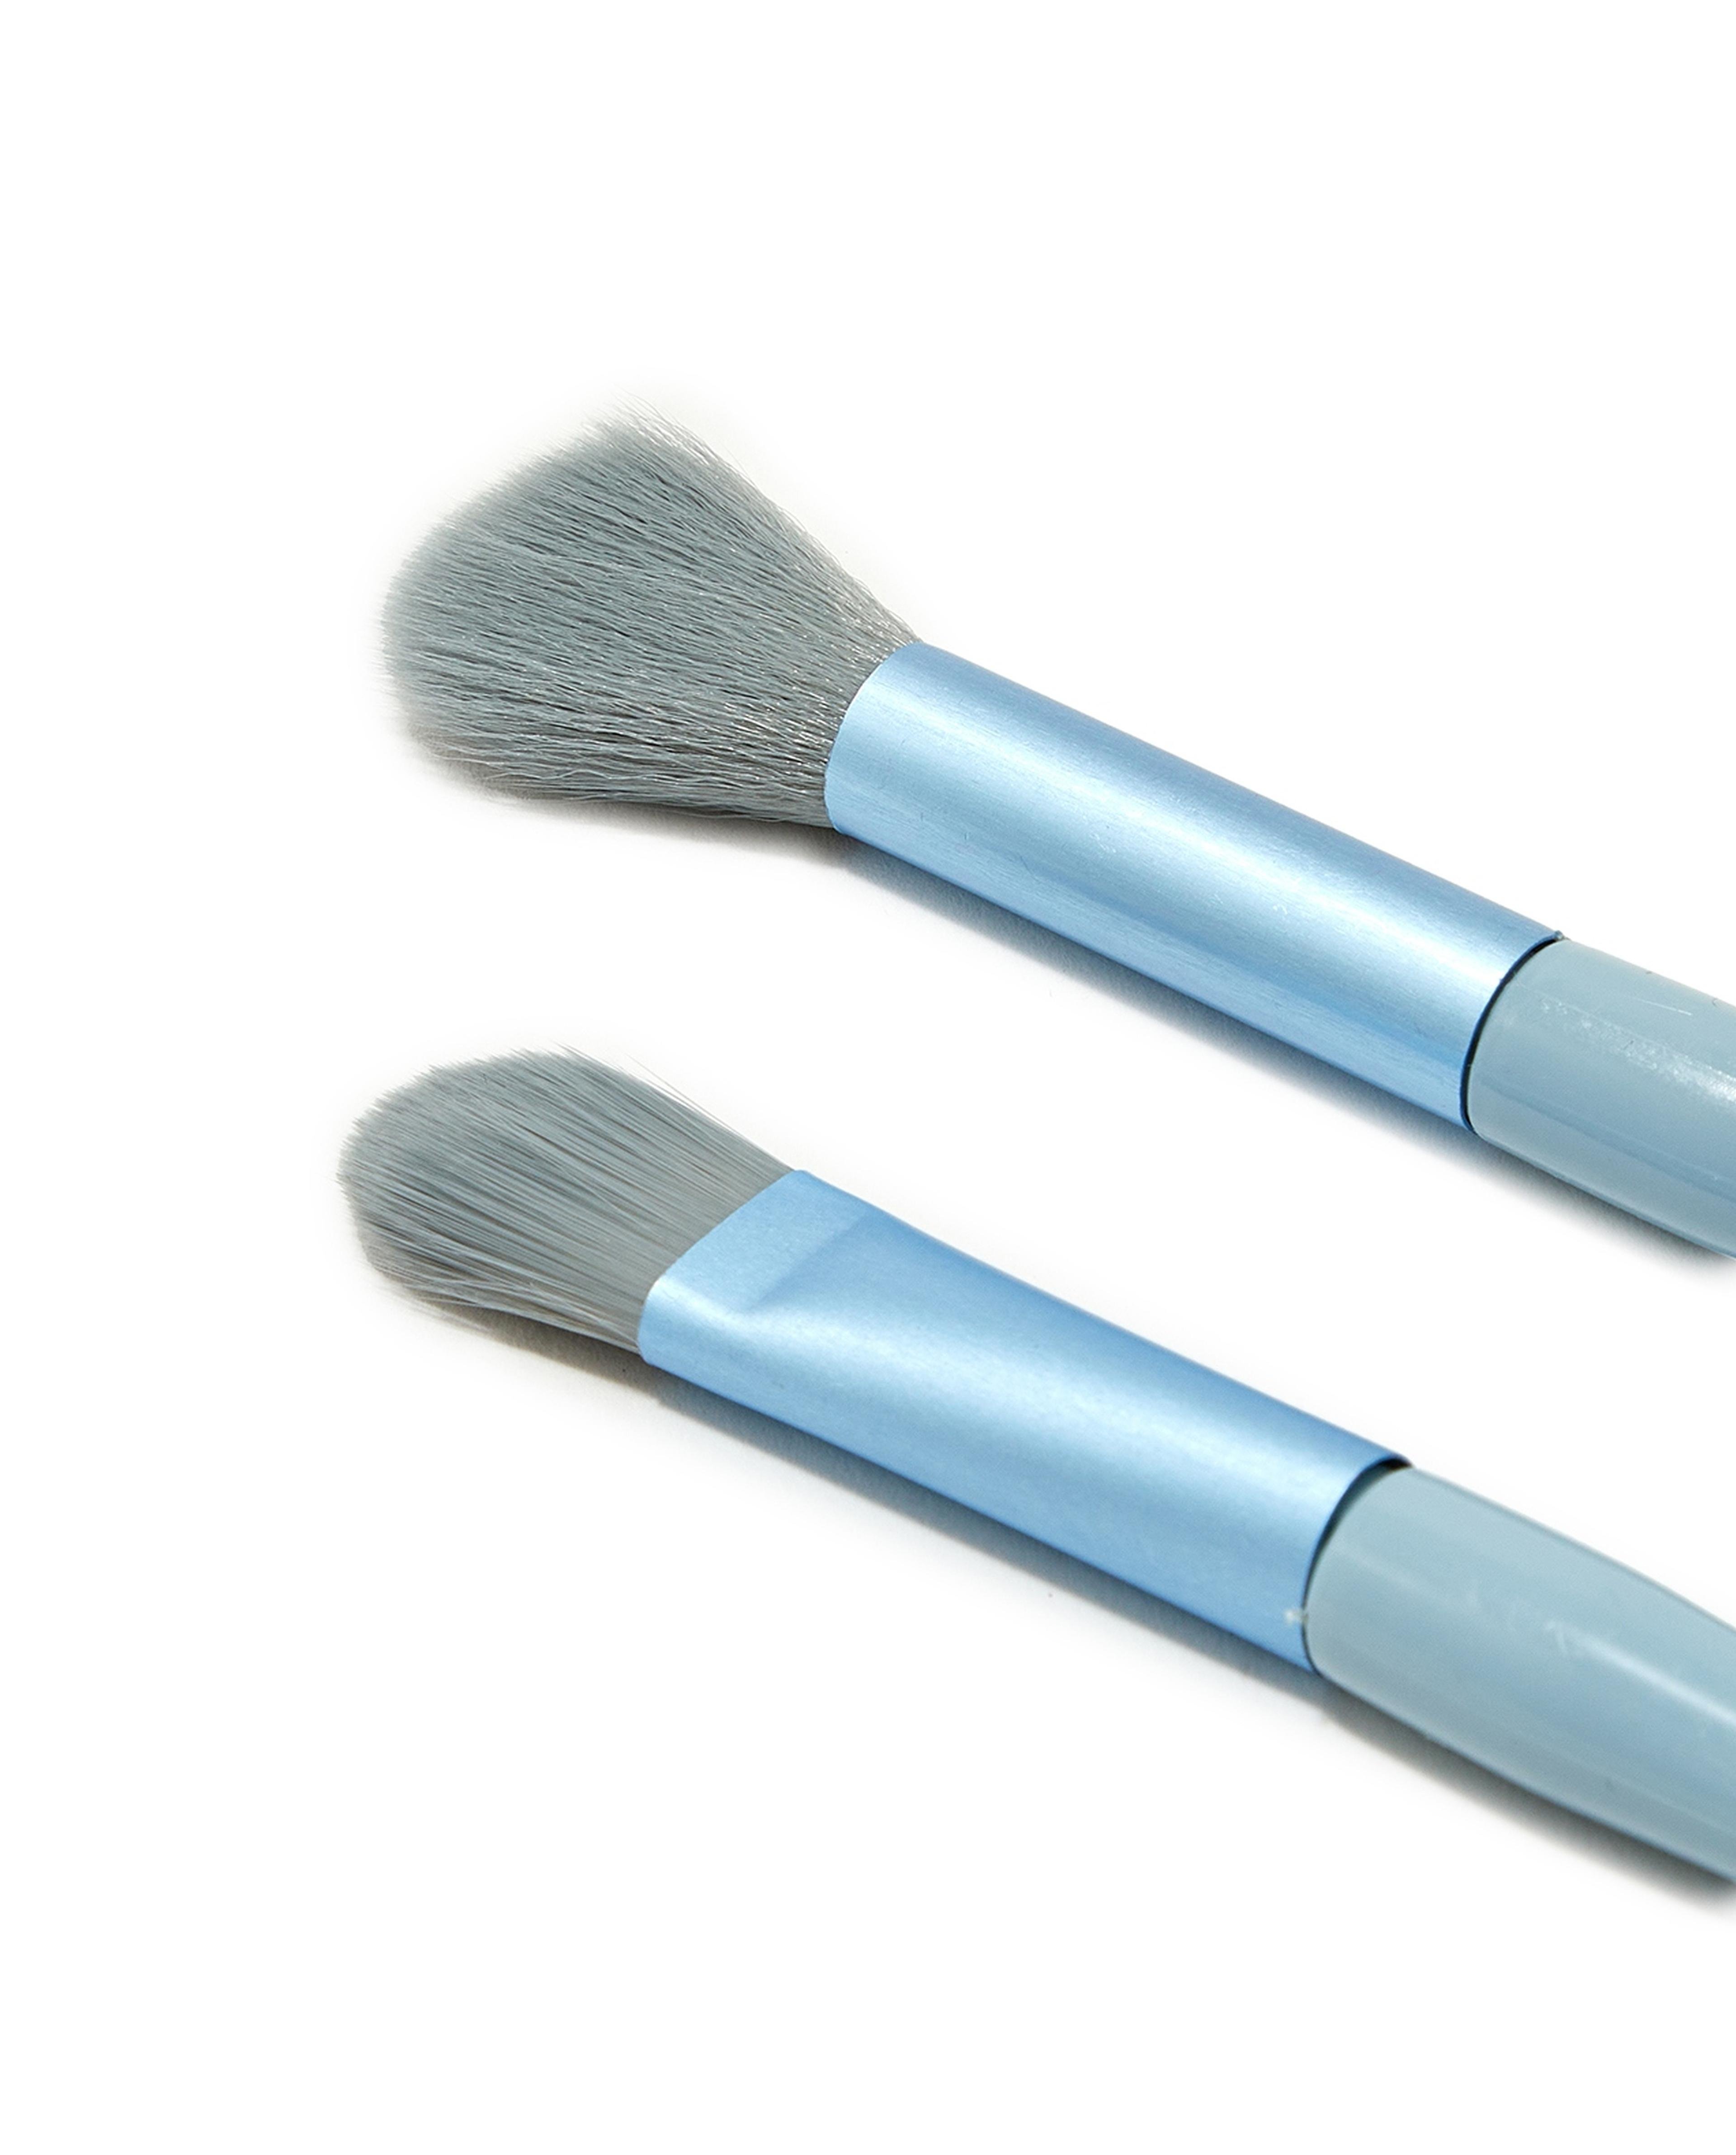 8 Piece Makeup Brush Set